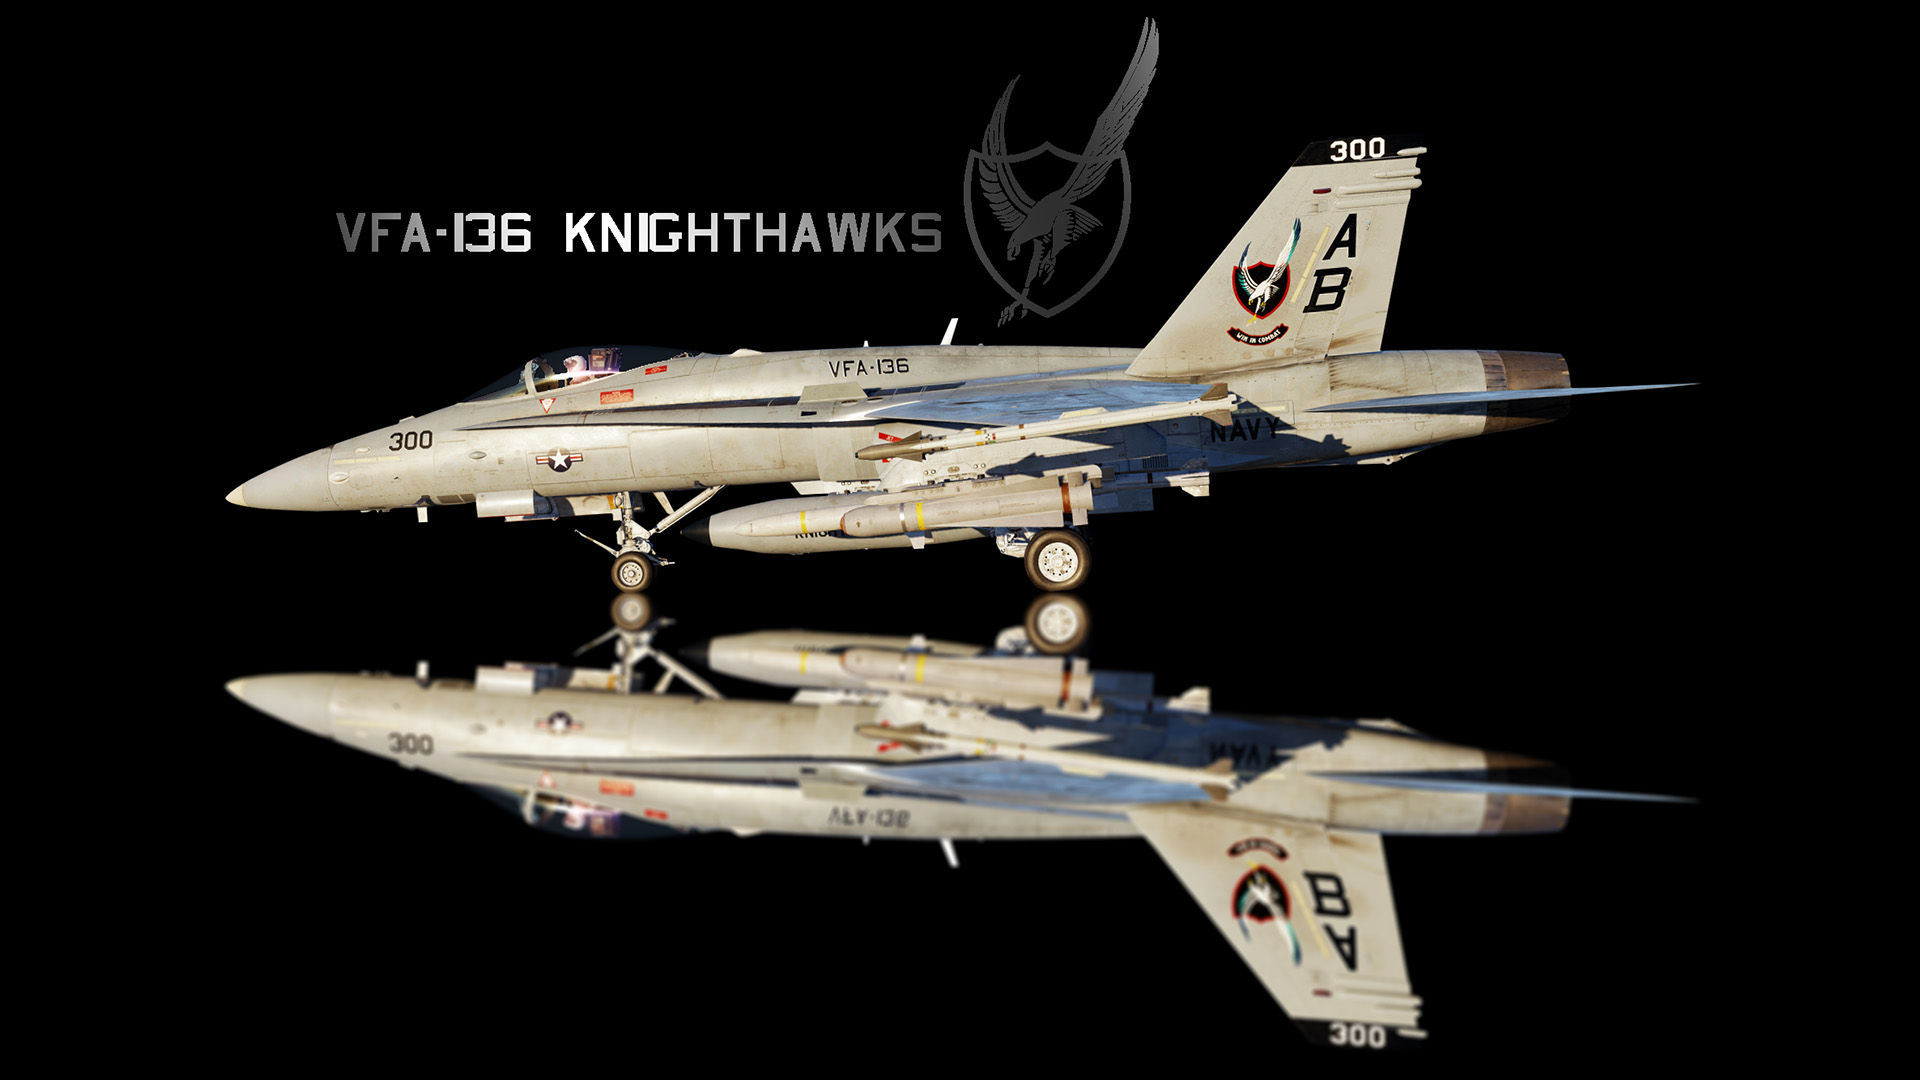 VFA-136 Knighthawks